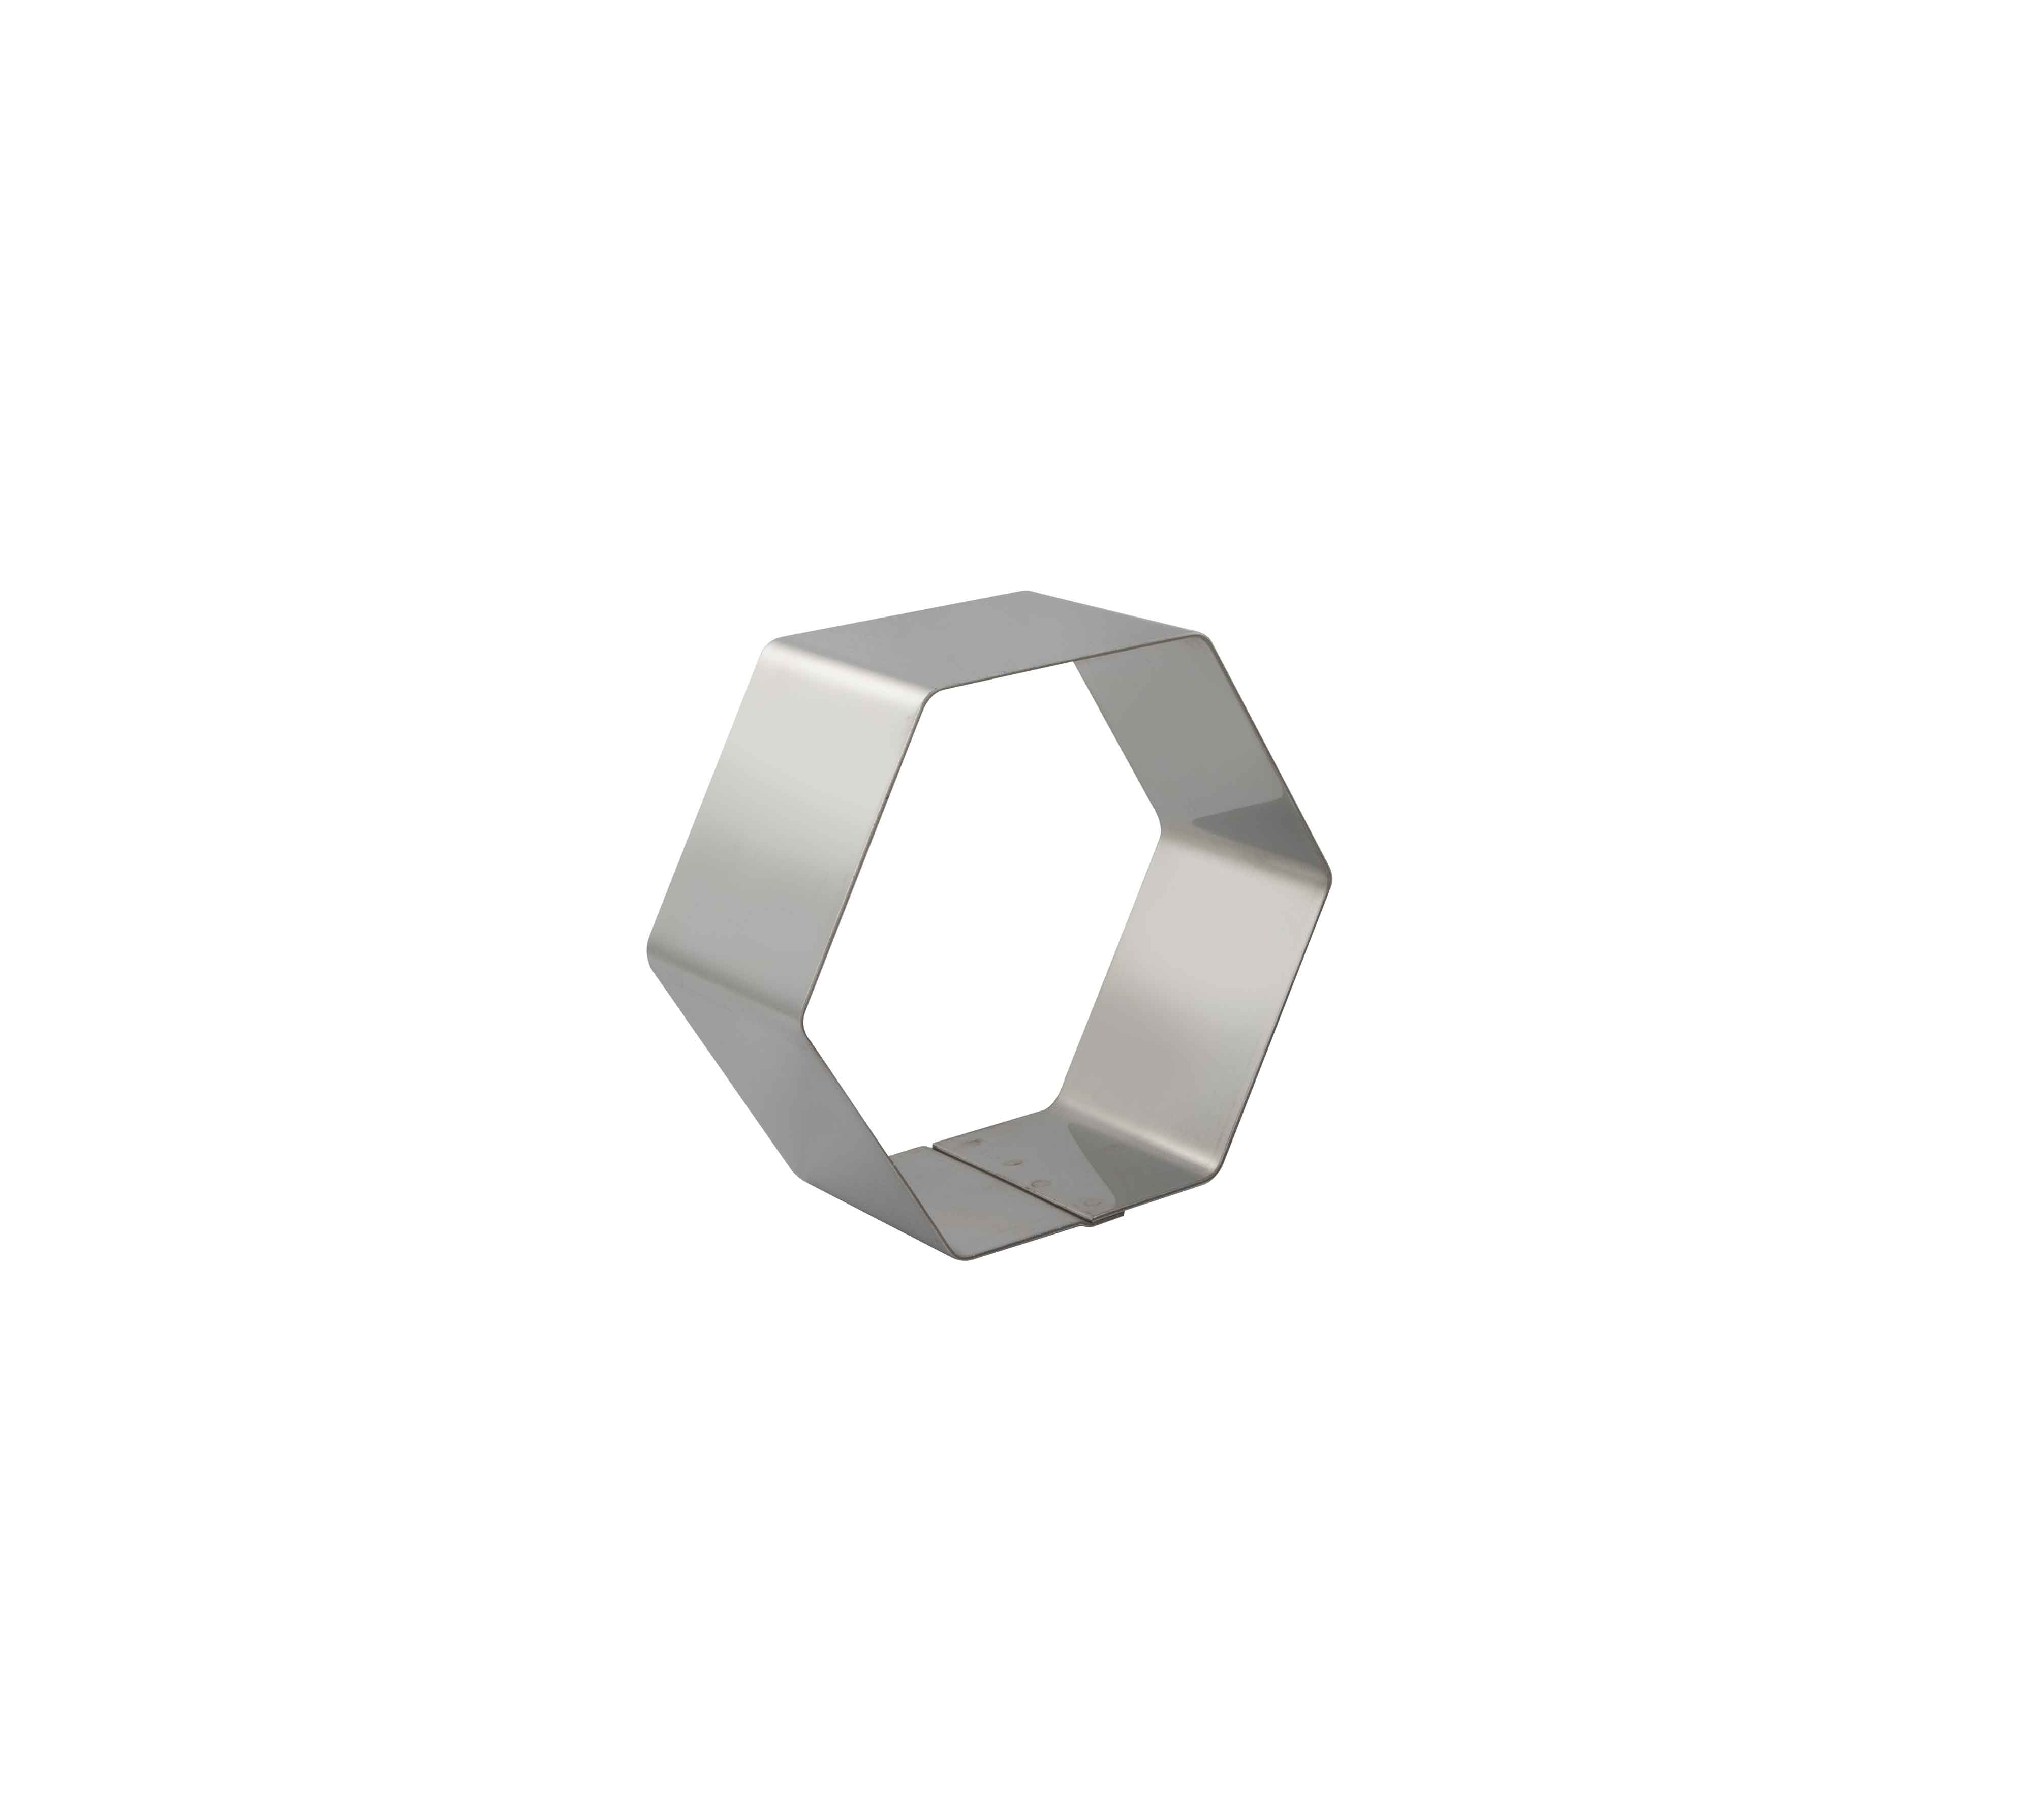 Hexagonal - h 50 mm